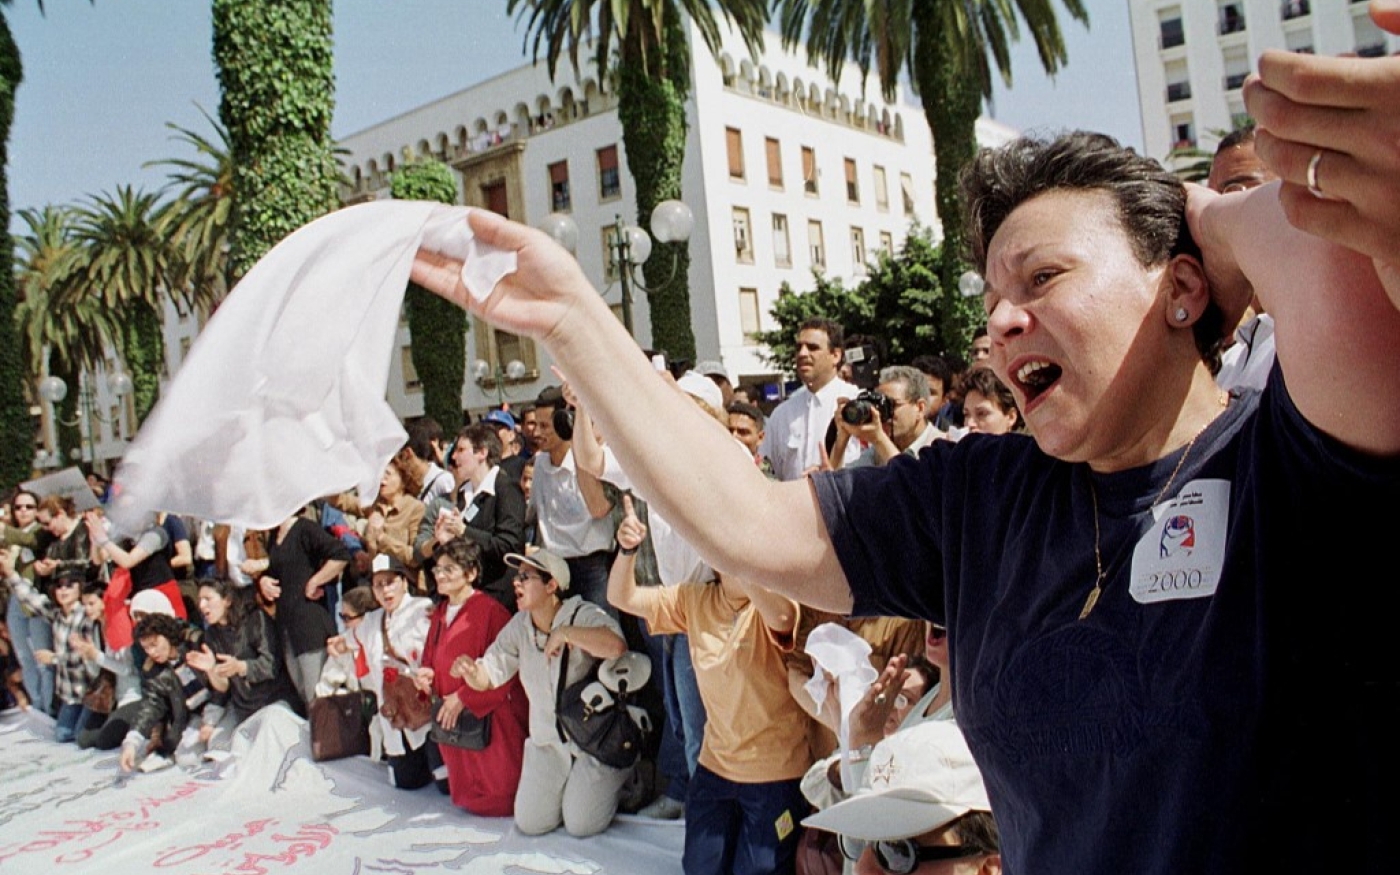 Manifestation en faveur des plans du gouvernement visant à améliorer les droits des femmes au Maroc le 12 mars 2000 à Rabat (AFP/Joëlle Vassort)